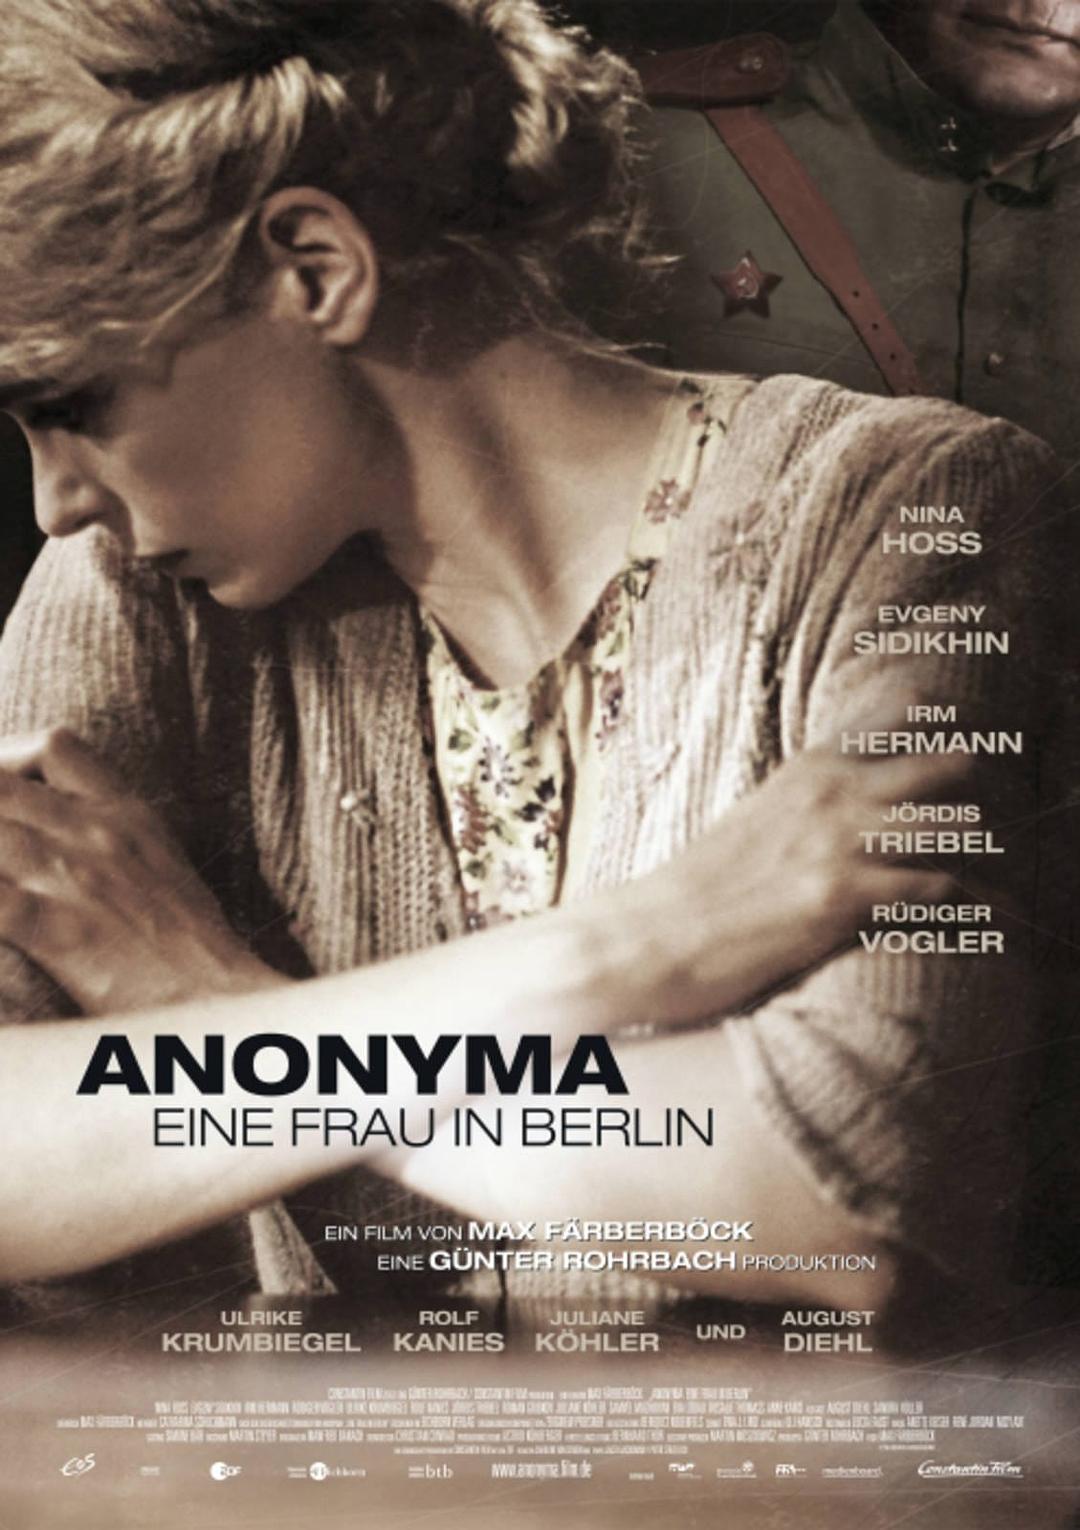 柏林的女人 [DIY简繁英双语字幕].Anonyma.-.Eine.Frau.in.Berlin.AKA.A.Woman.in.Berlin.2008.Blu-ray.1080p.AVC.DTS-HD.MA.5.1-TAG 22.77GB-1.jpg